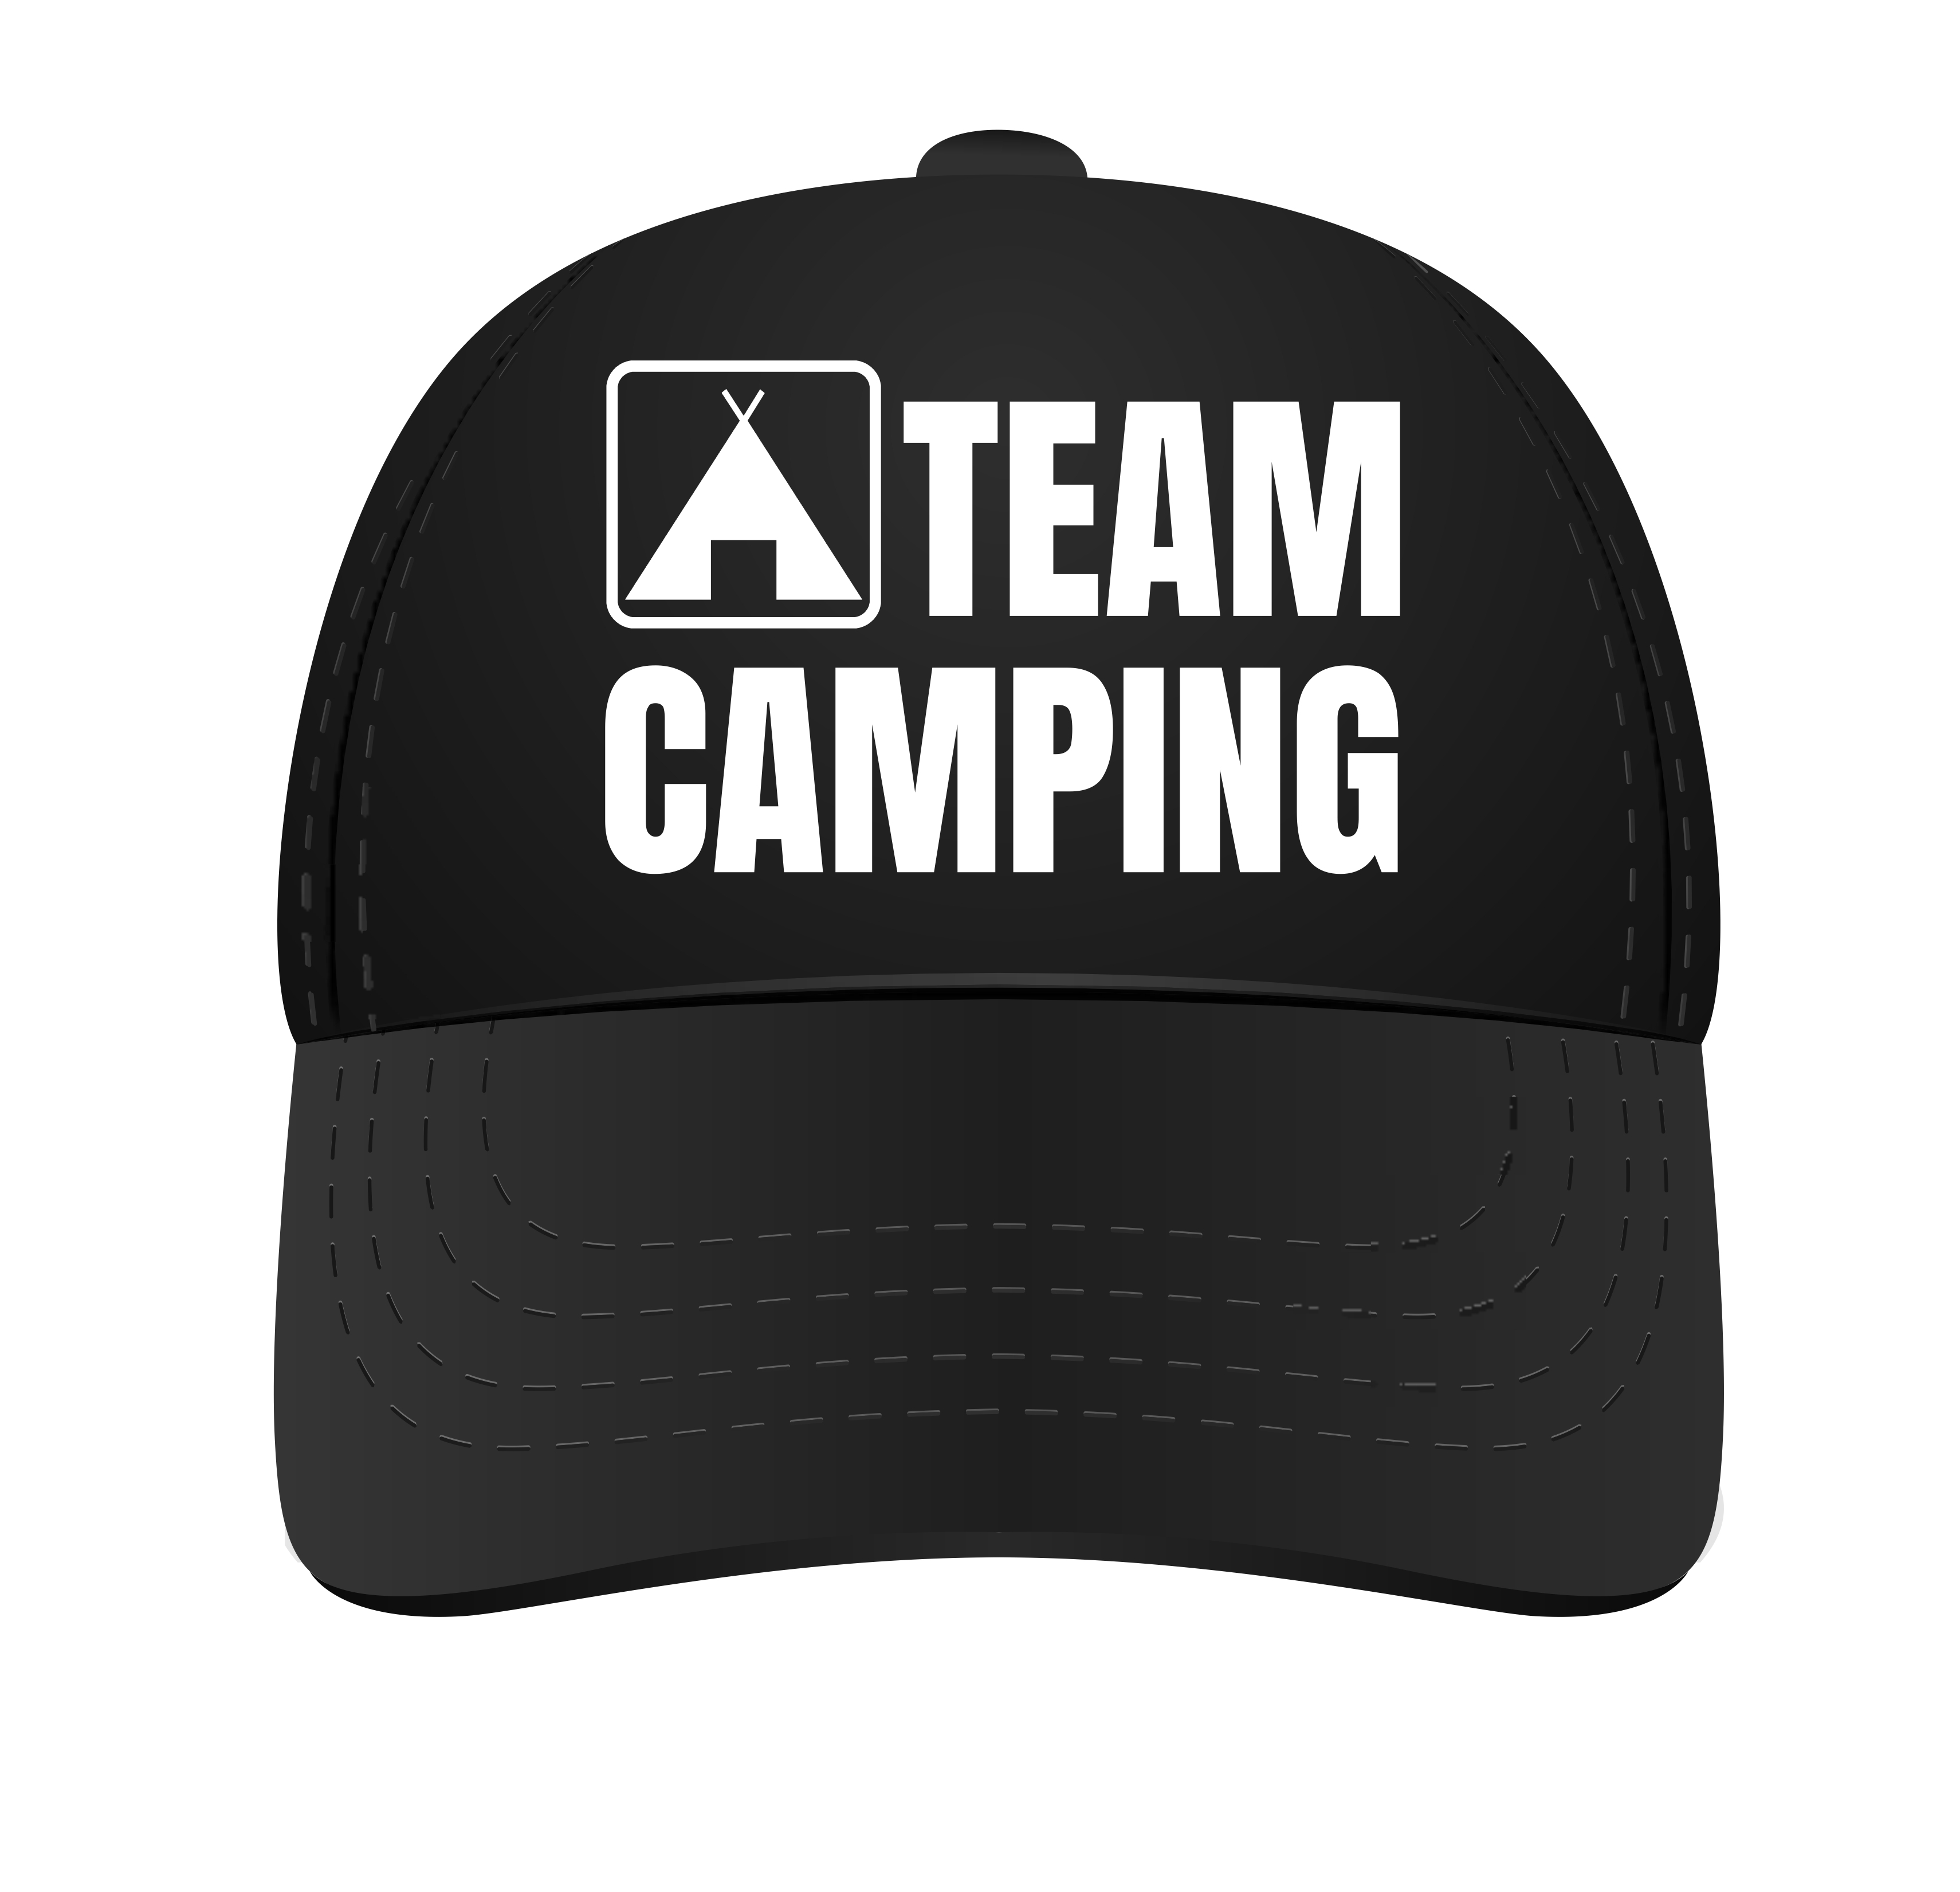 Pet voor Team camping. Het camping team pet